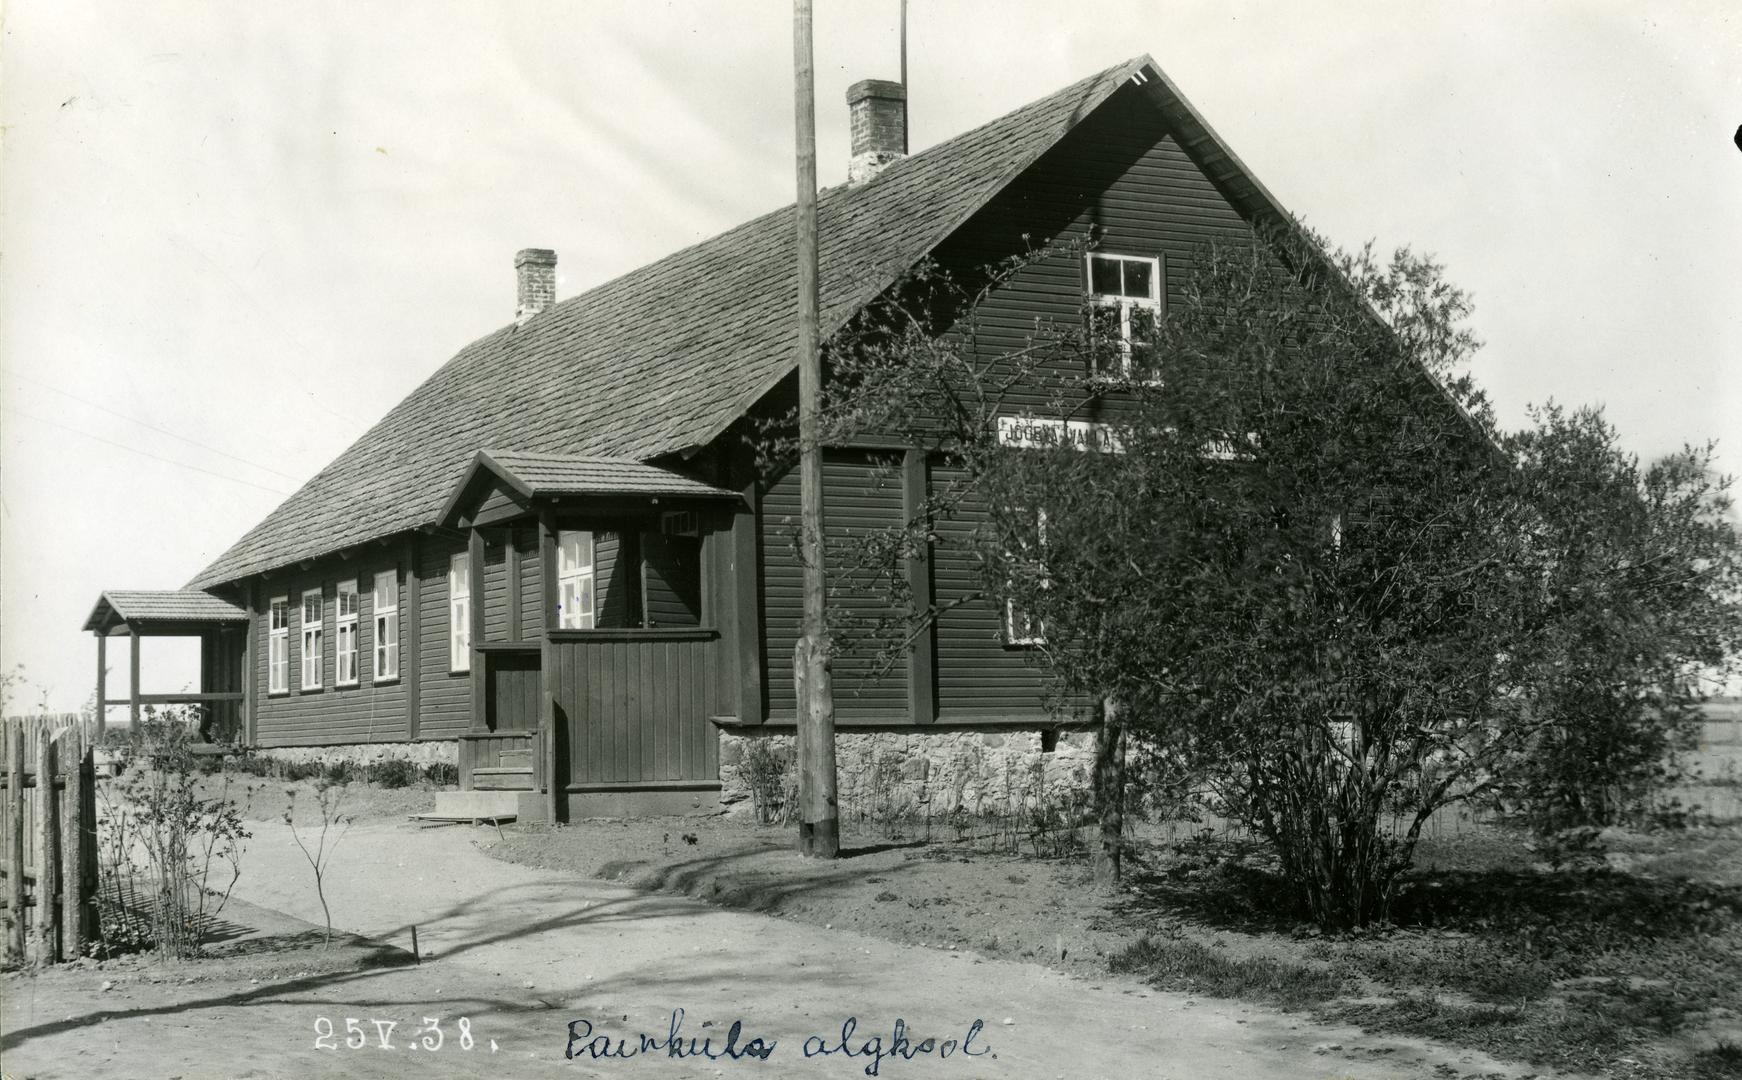 Painküla Algkooli building of Jõgeva municipality